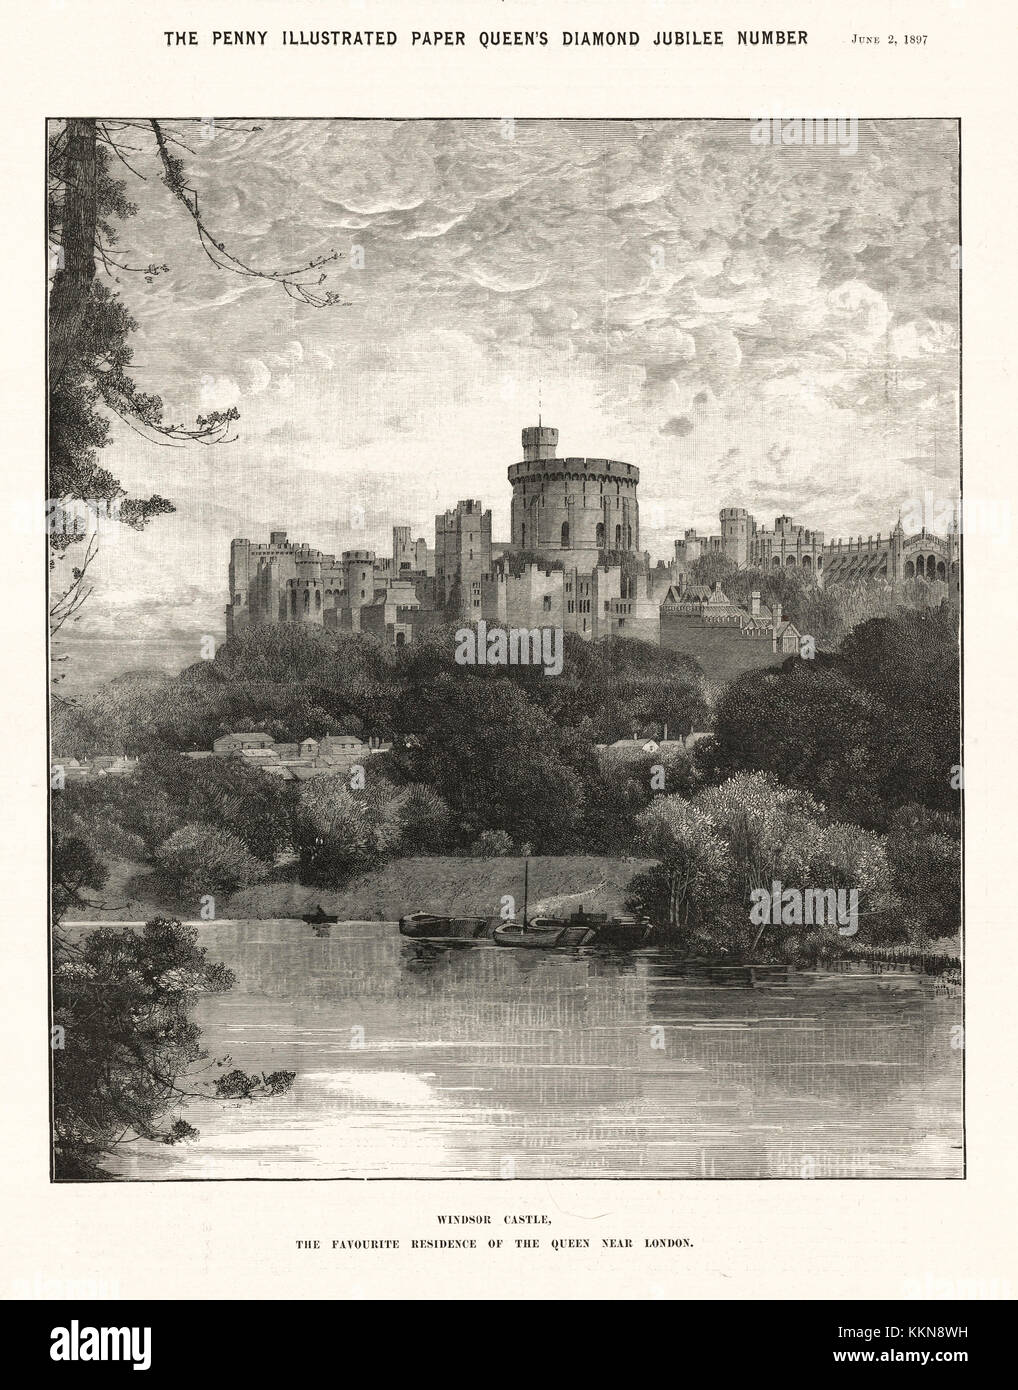 1897 Penny ilustra el papel de Castillo de Windsor, residencia favorita de la Reina Victoria Foto de stock